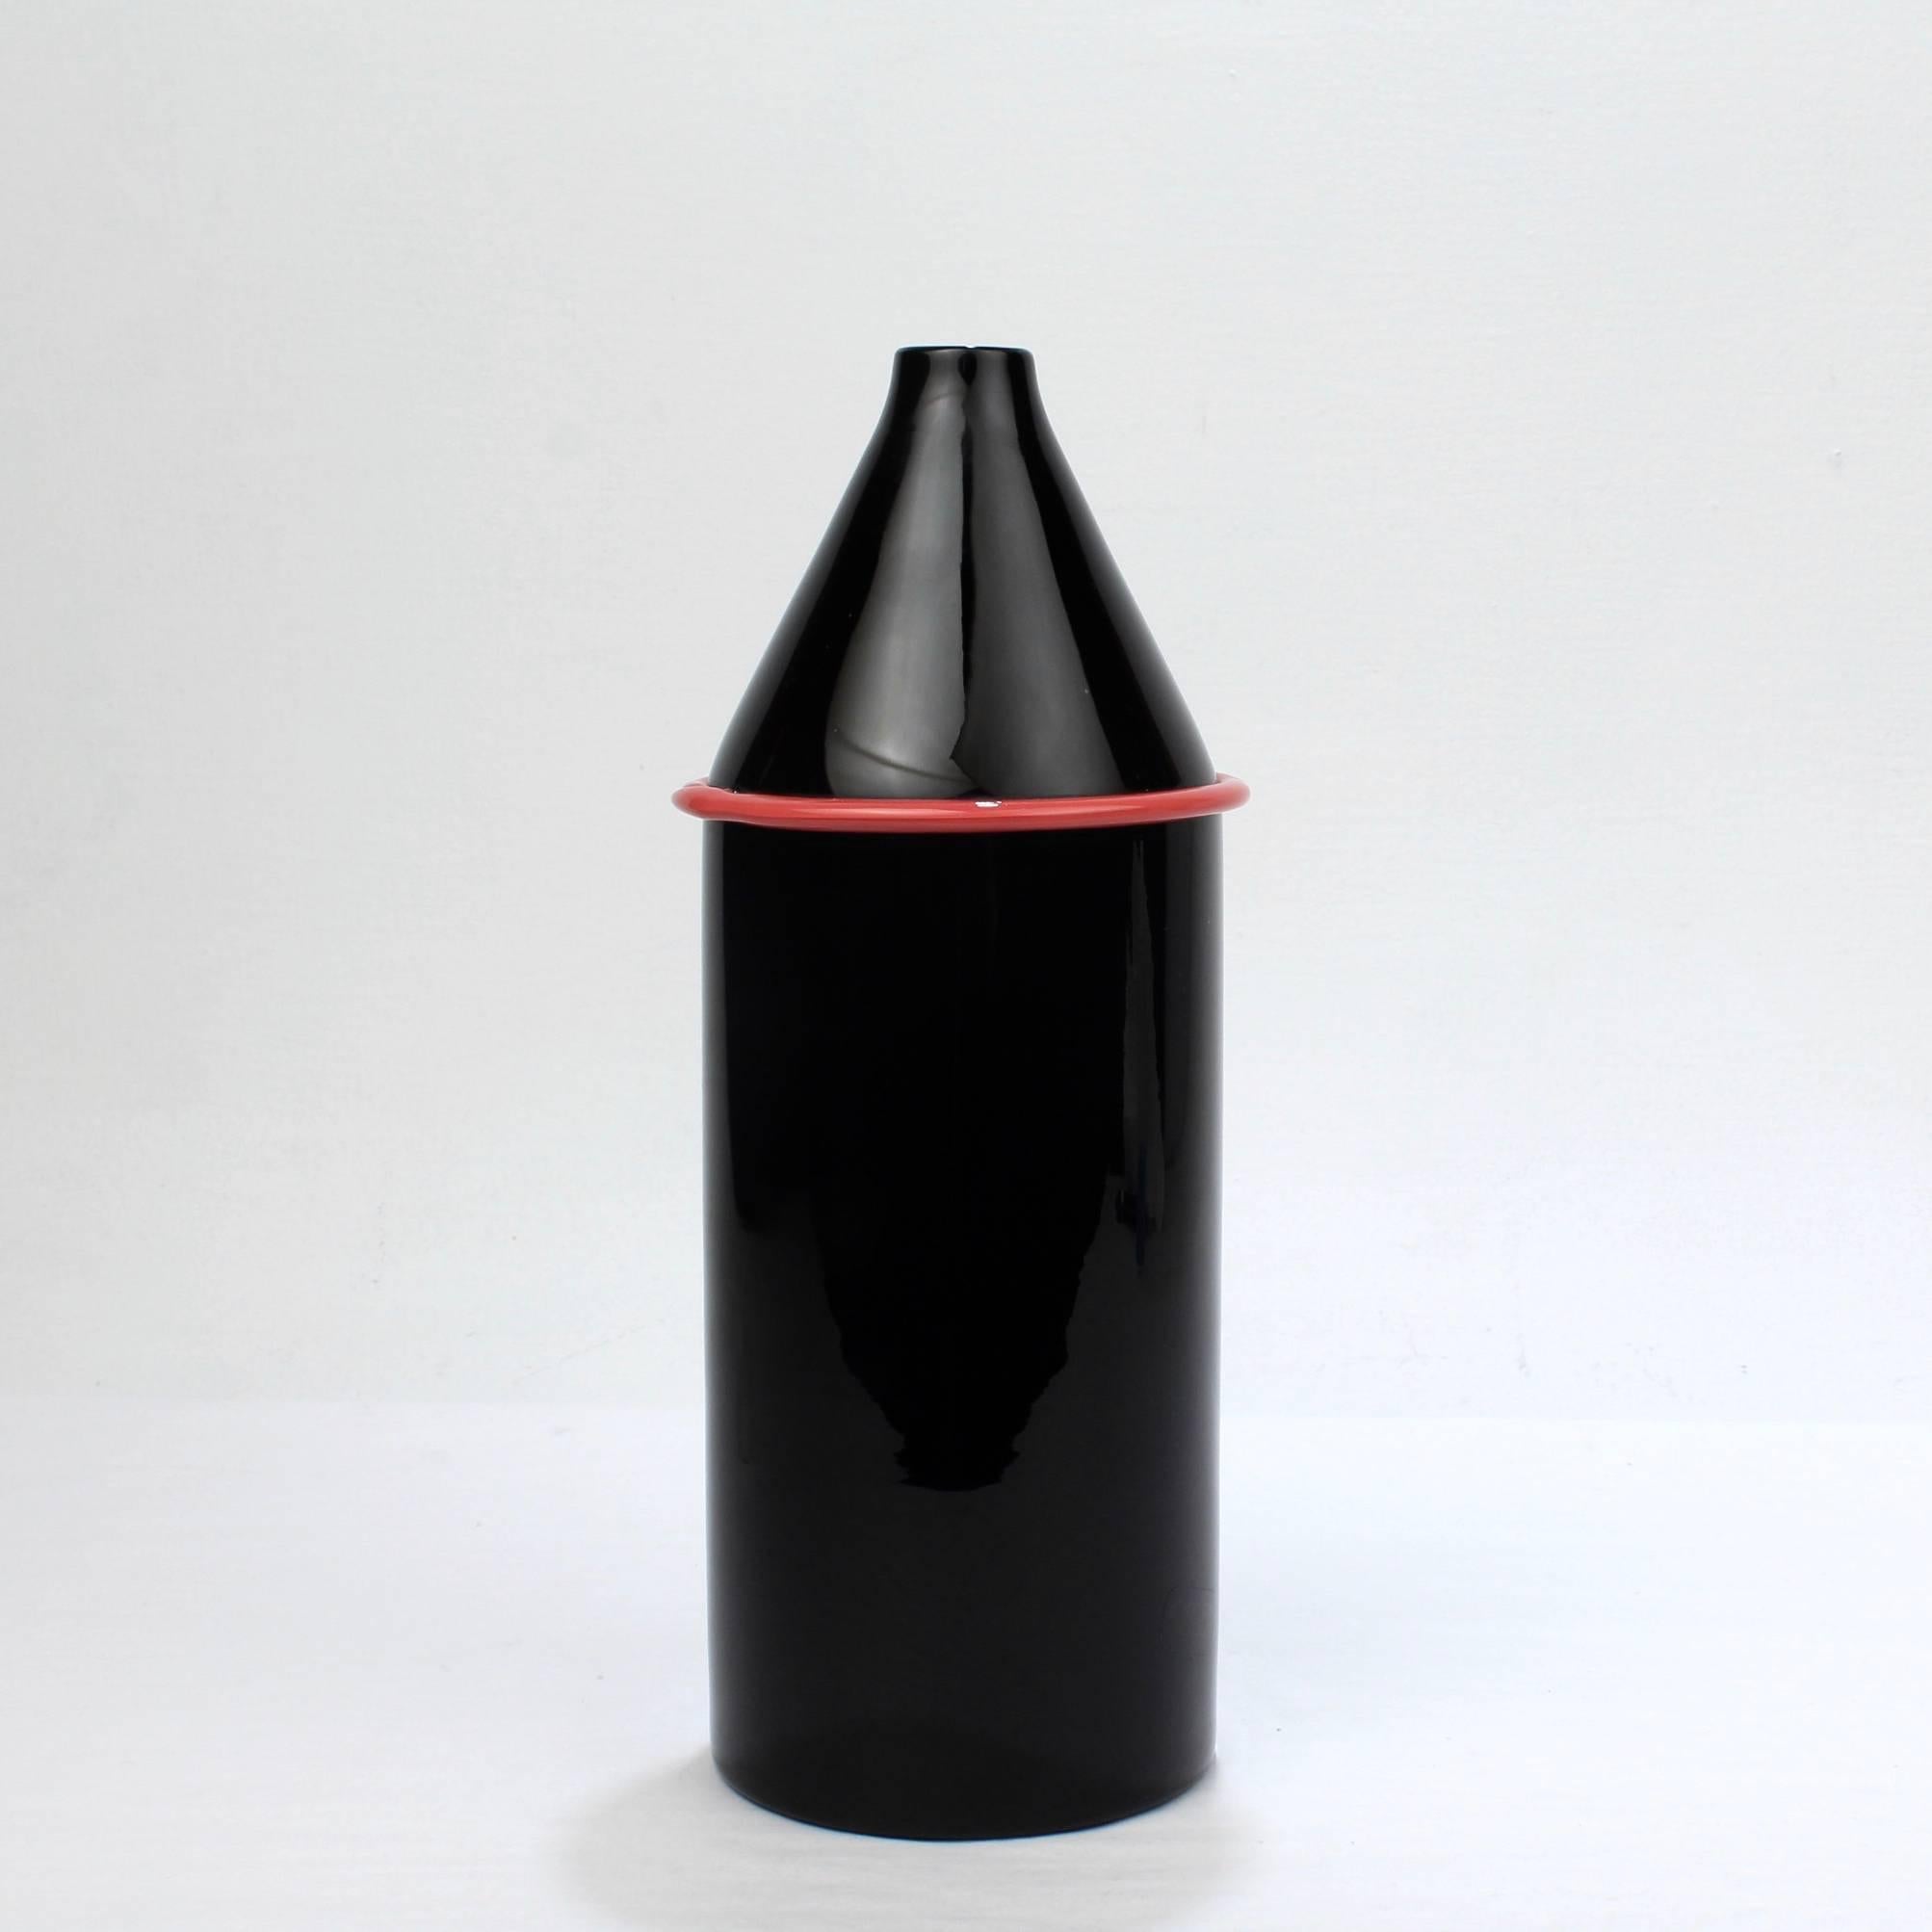 Eine sehr gute Vase aus Murano-Glas von Lino Tagliapietra und Marina Angelin mit Effetre International für Oggetti.

Eine schwarze Vase in Form einer Flasche mit aufgelegtem roten Band.

Ein schönes Werk von einem der Meister des 20.